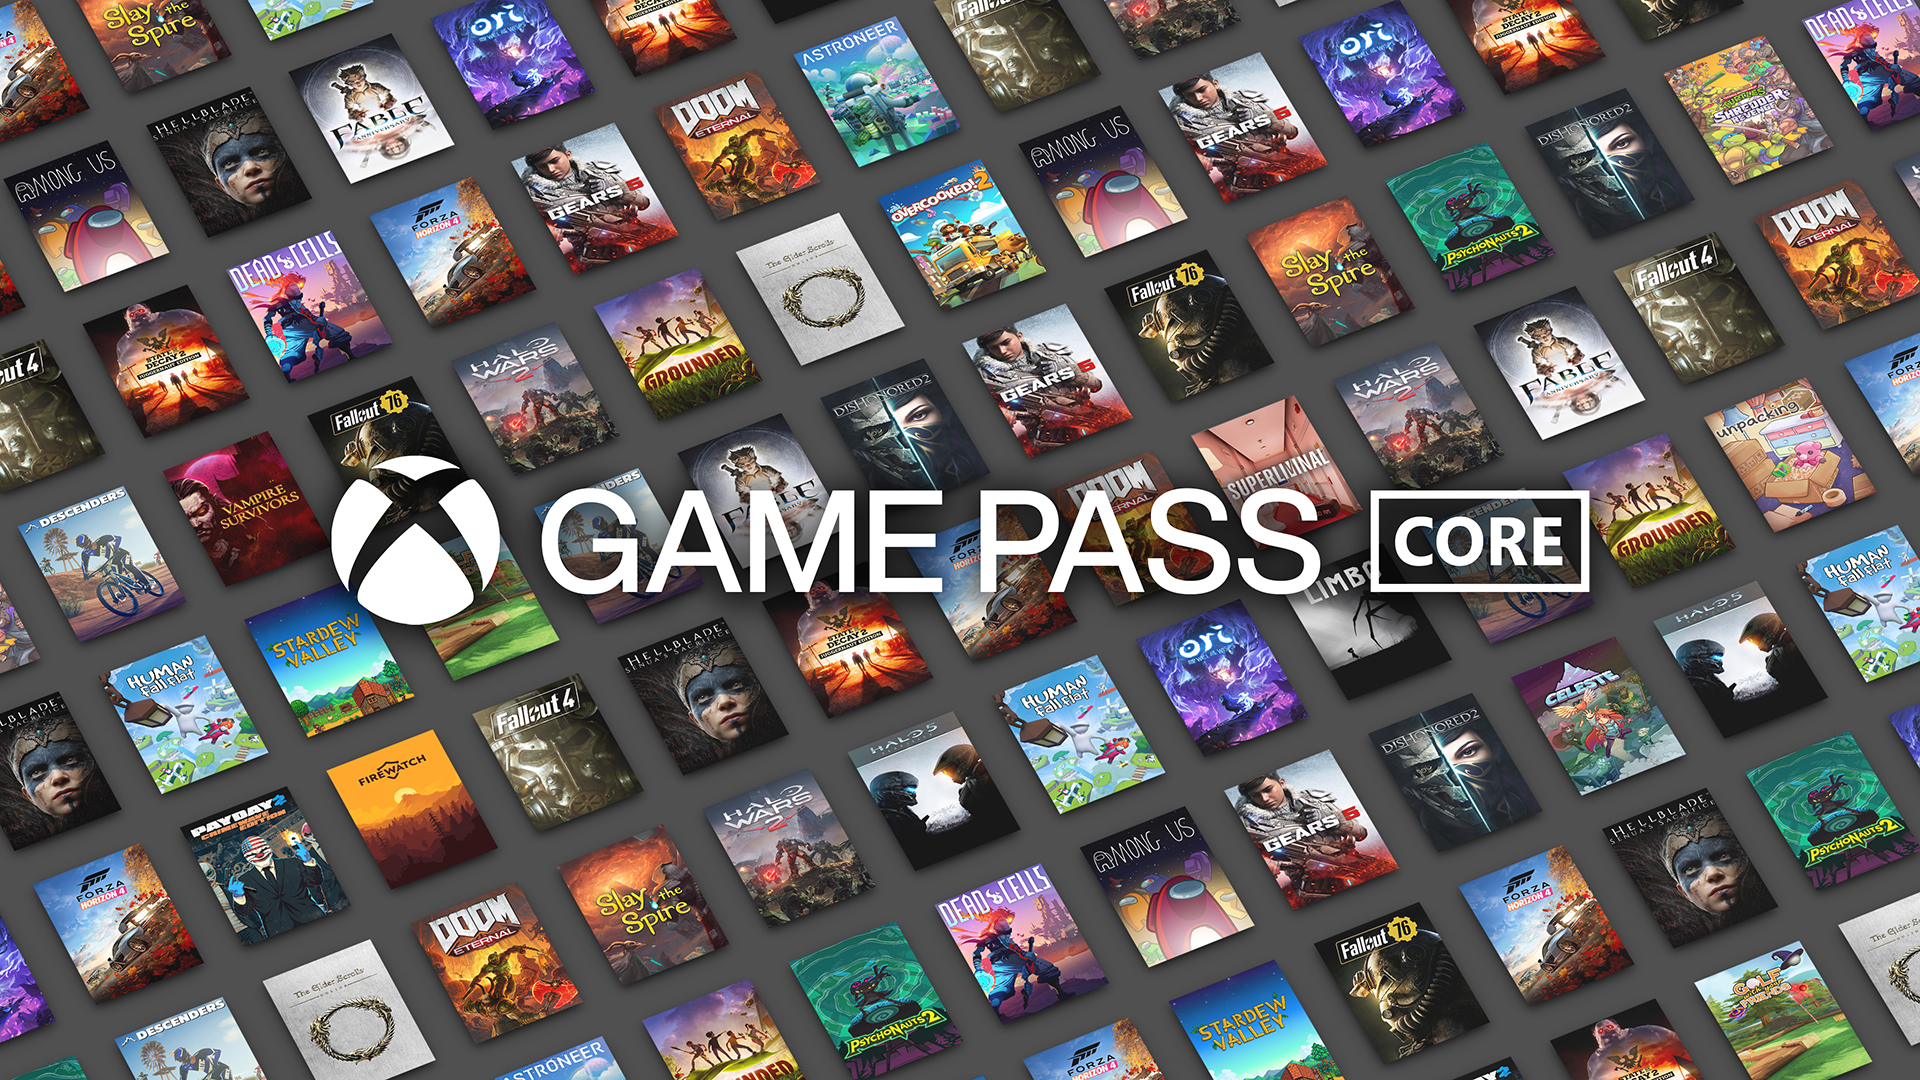 После замены Xbox Live Gold на Game Pass Core геймеры получили каталог из 36 игр